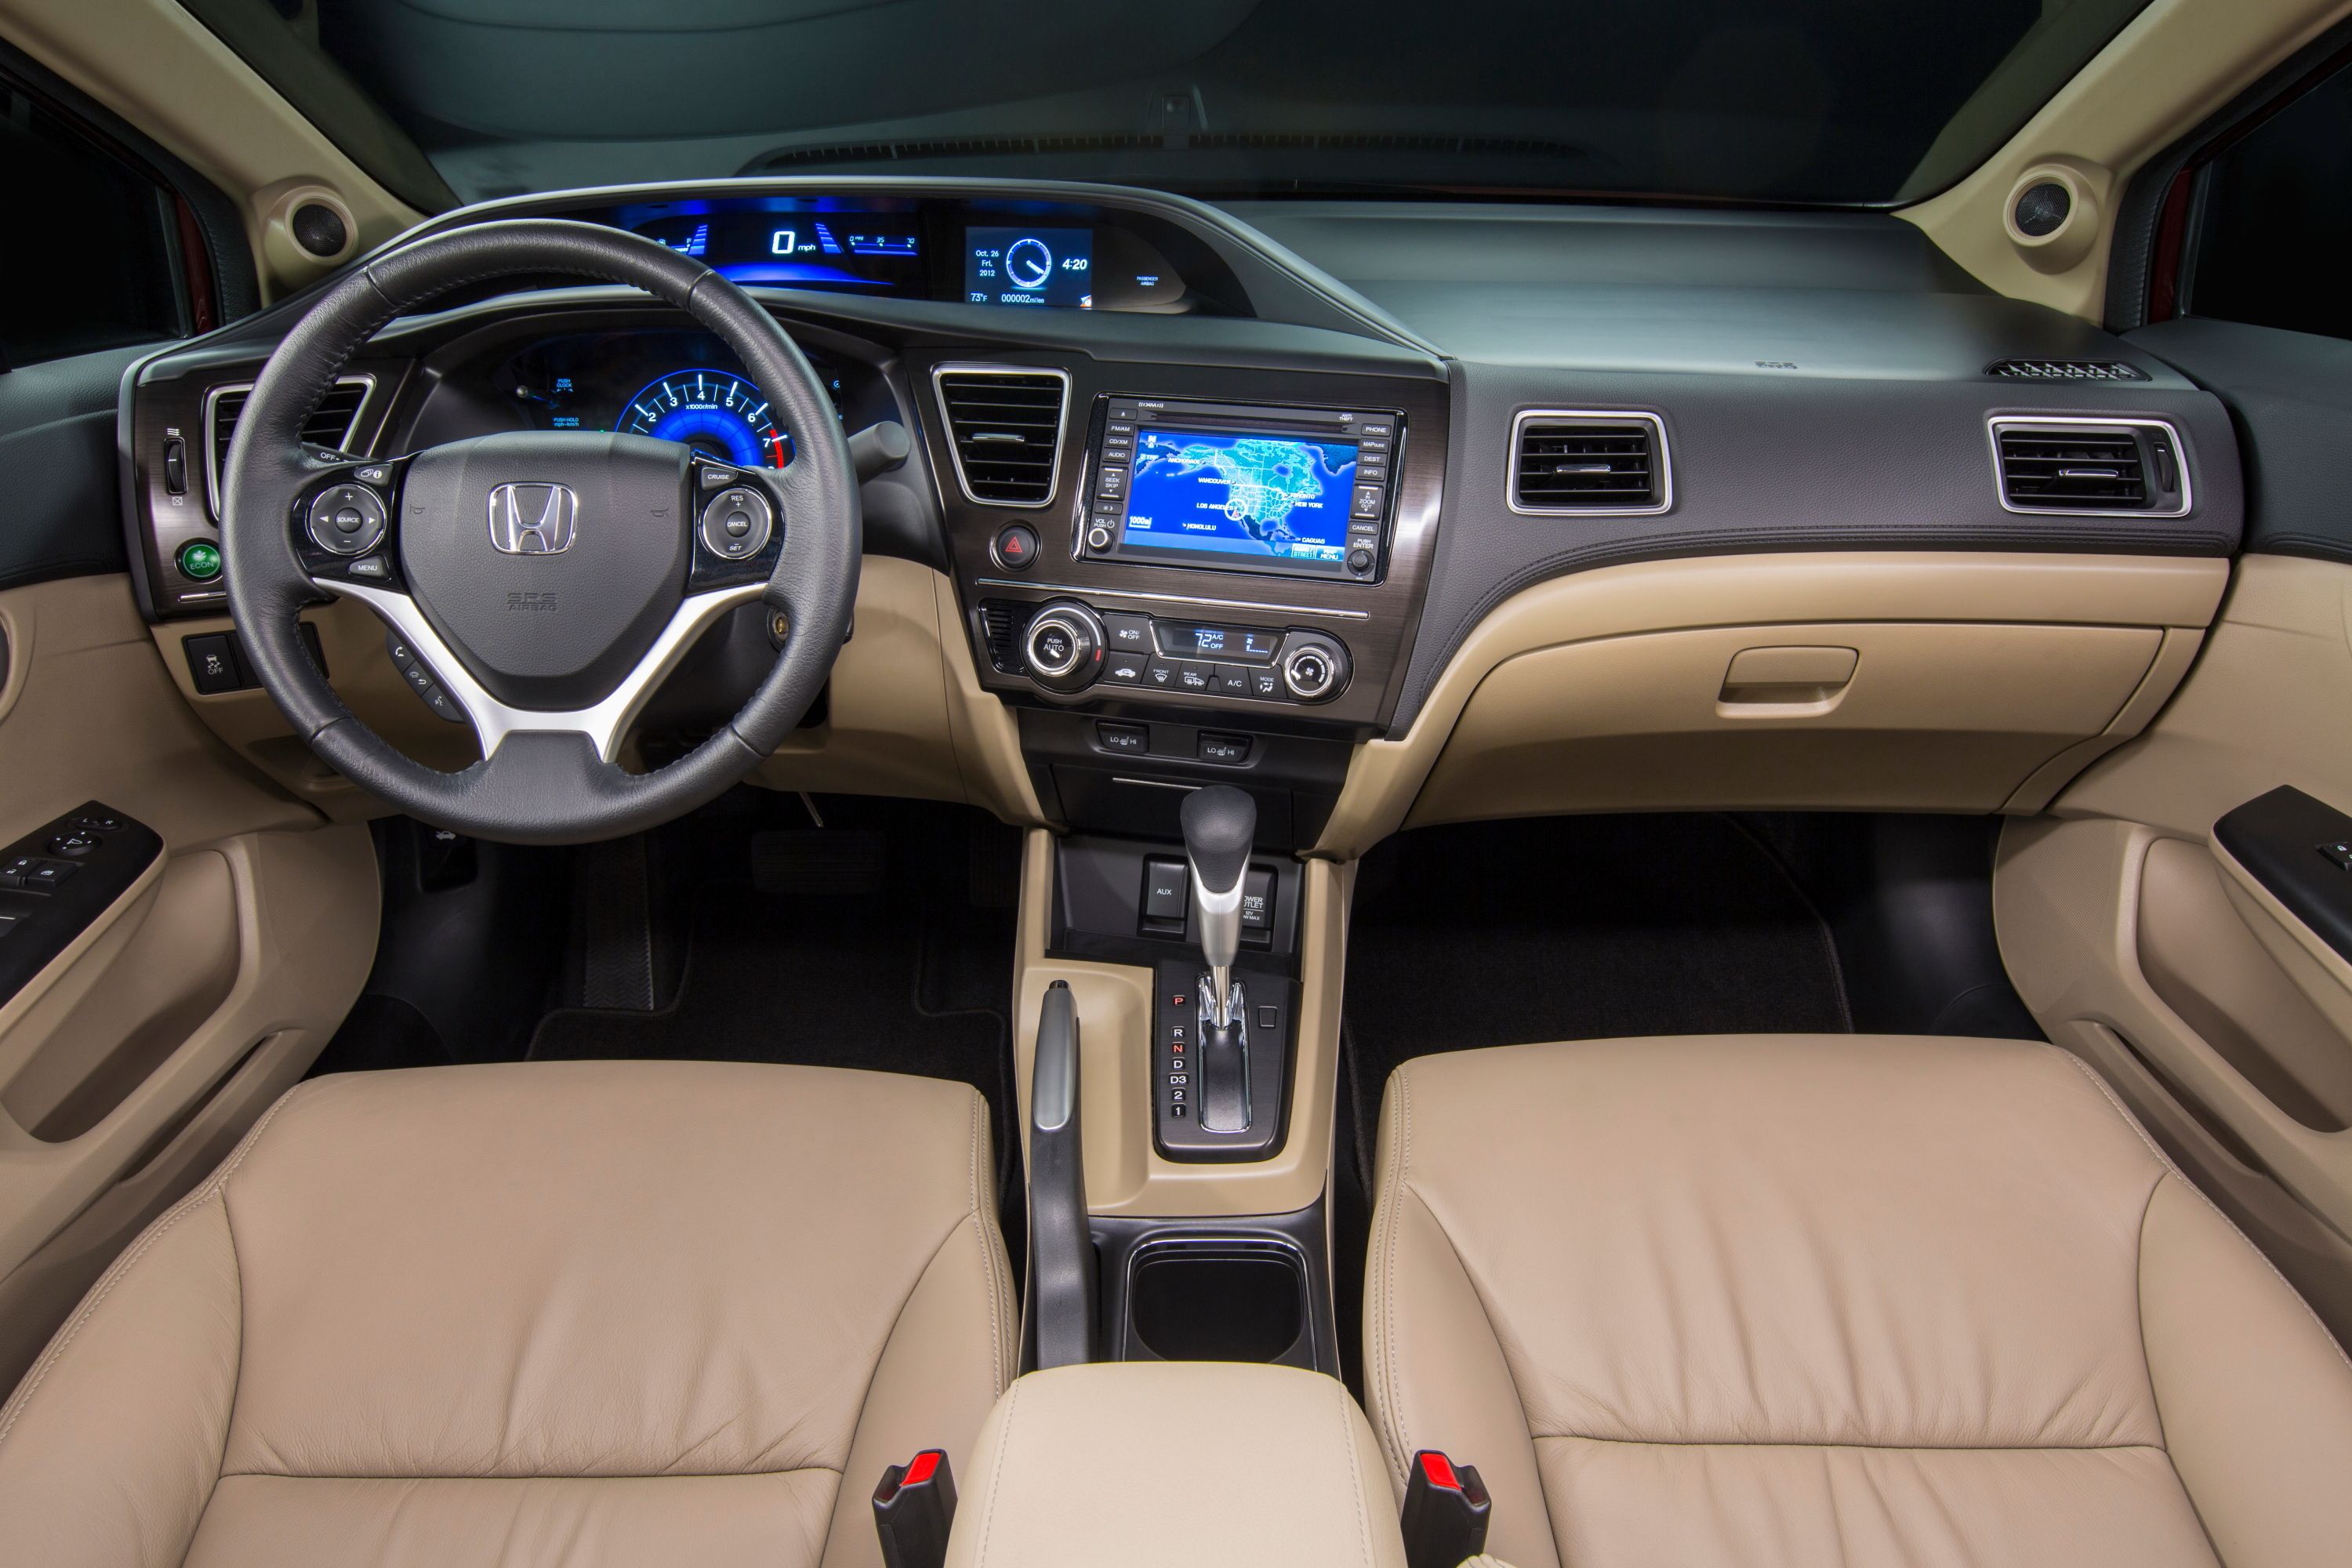 2013 Honda Civic Sedan